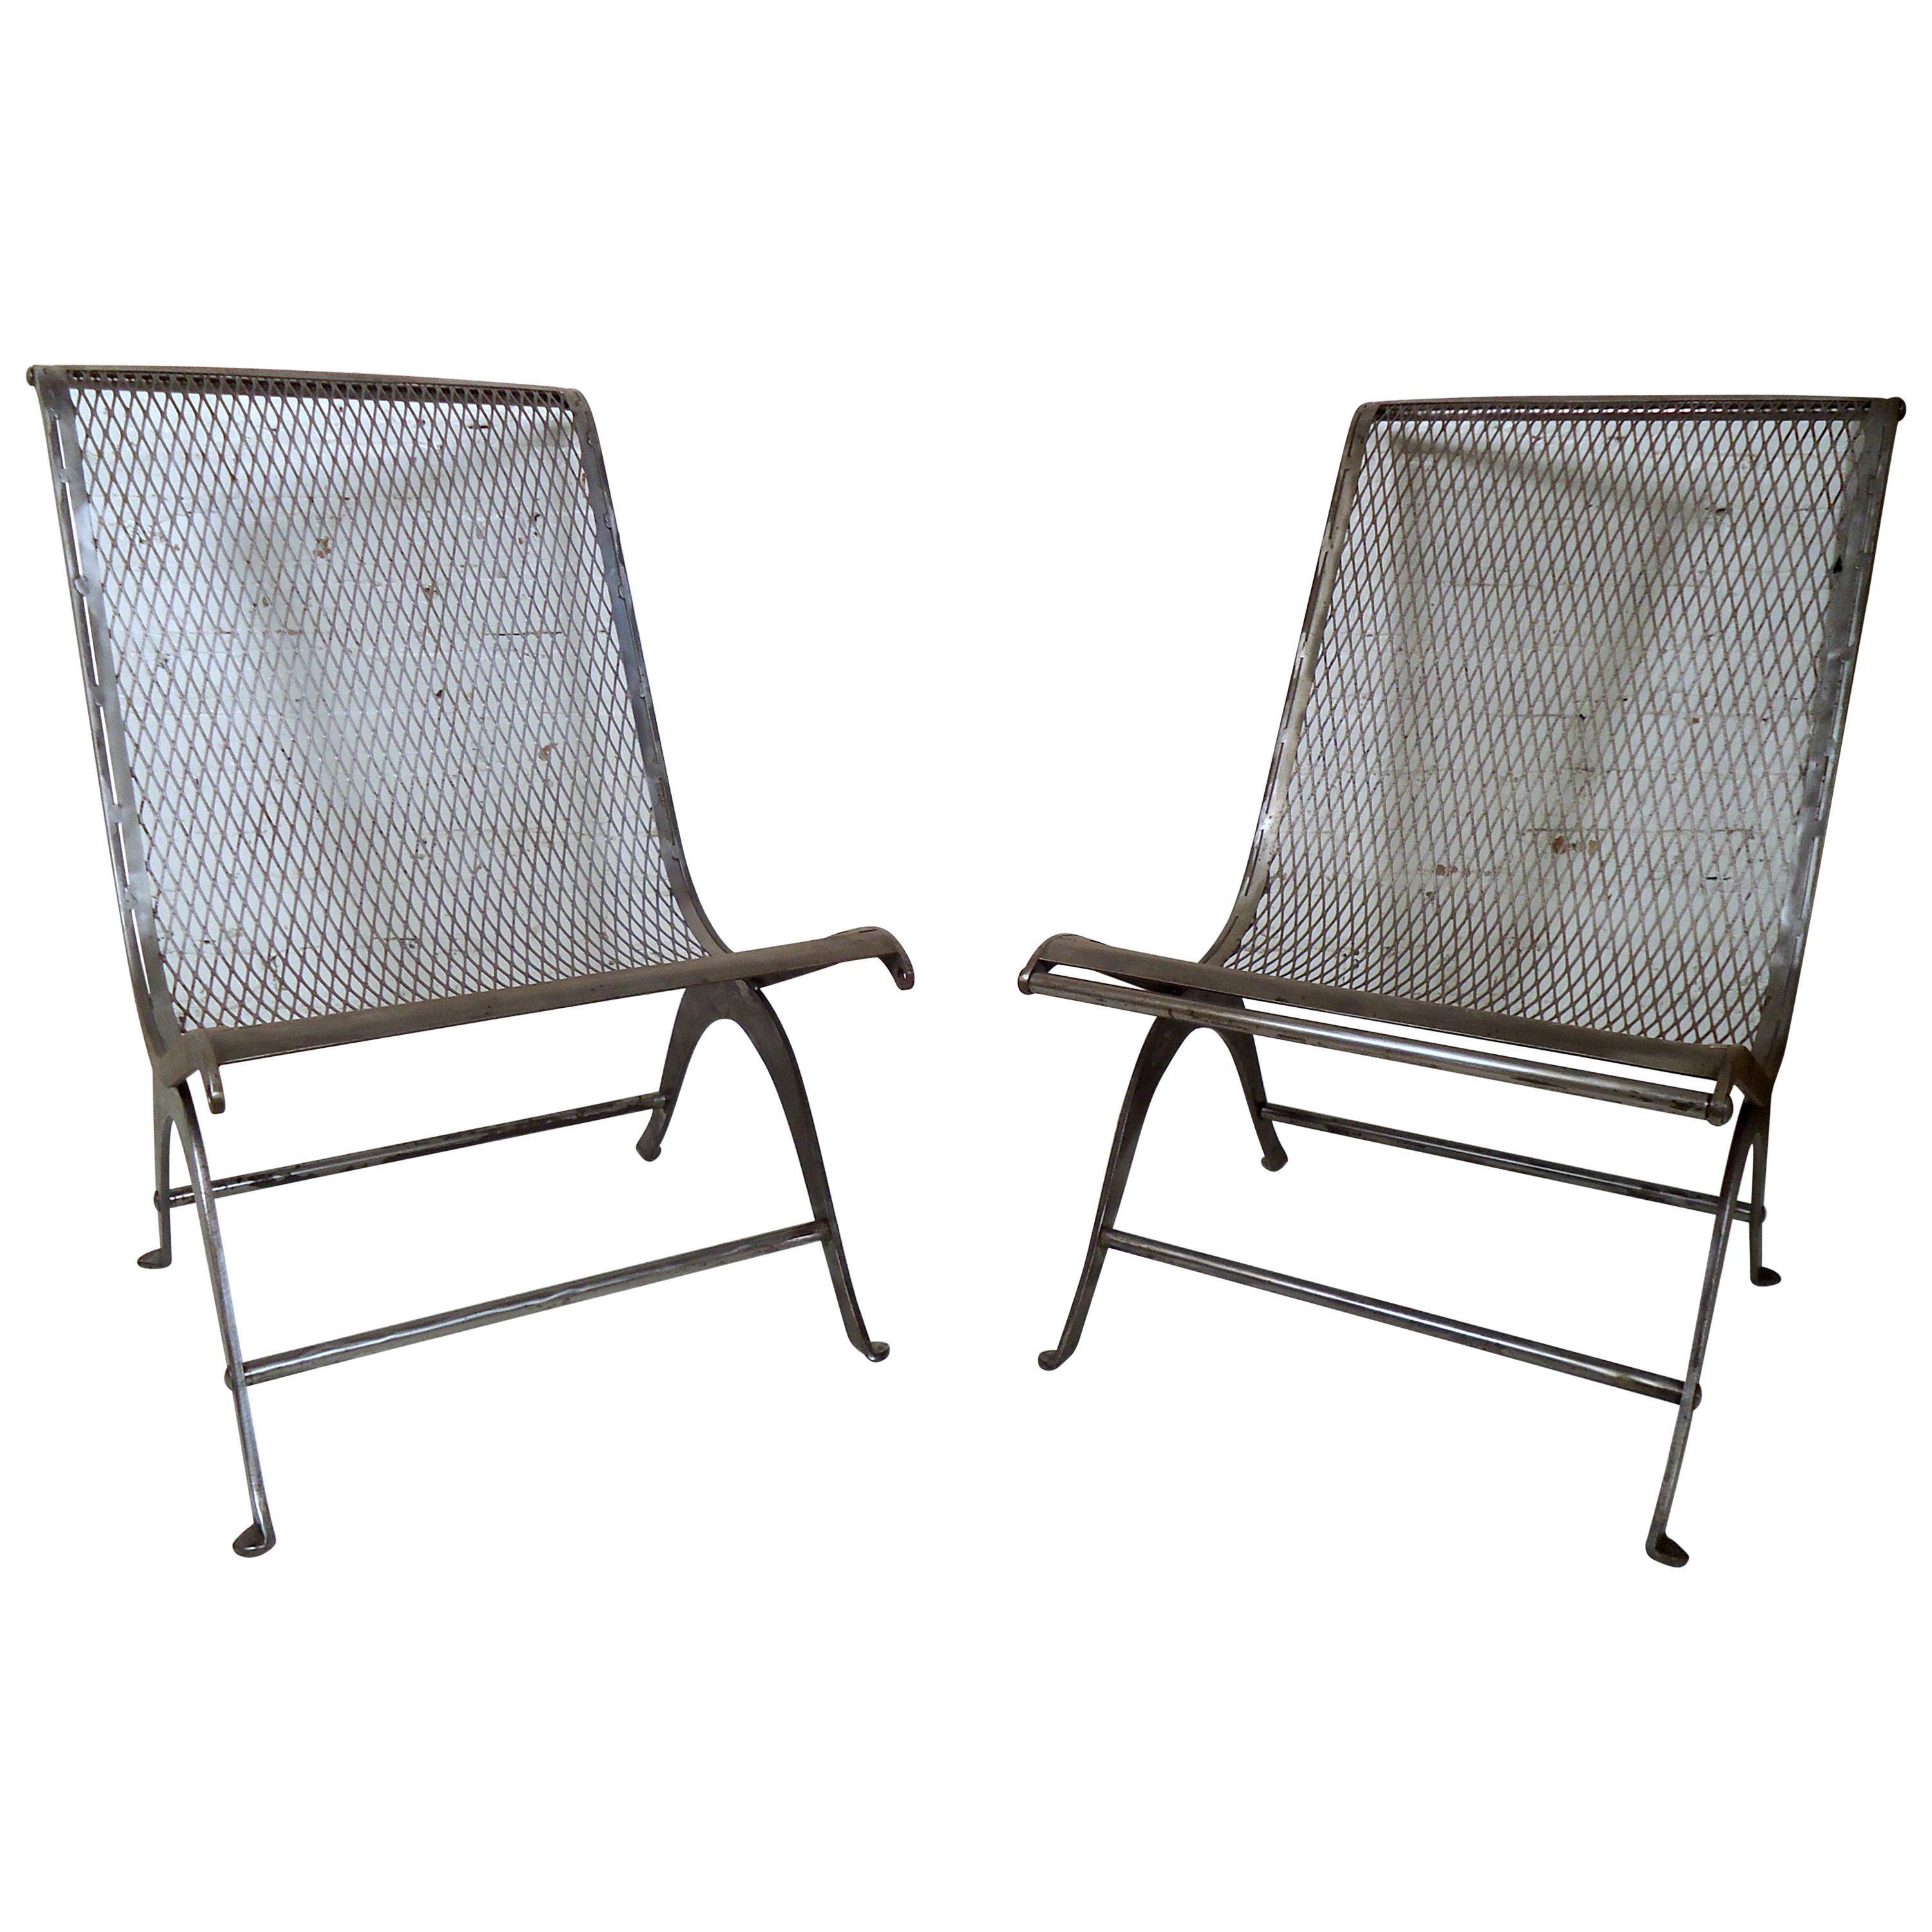 Pair of Vintage Industrial Chairs